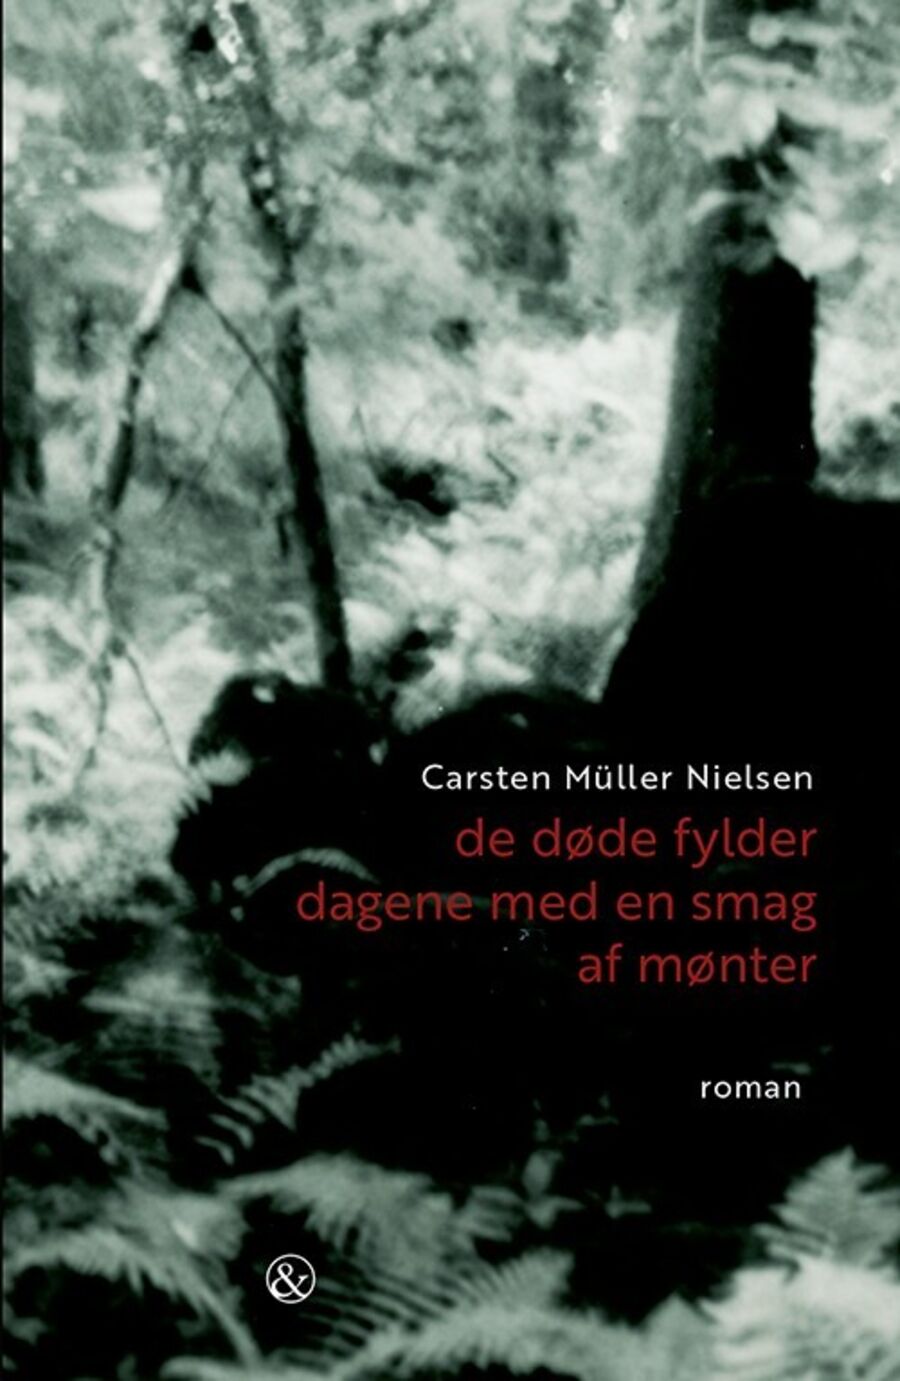 DRs romanpris 2020 til Carsten Müller Nielsen